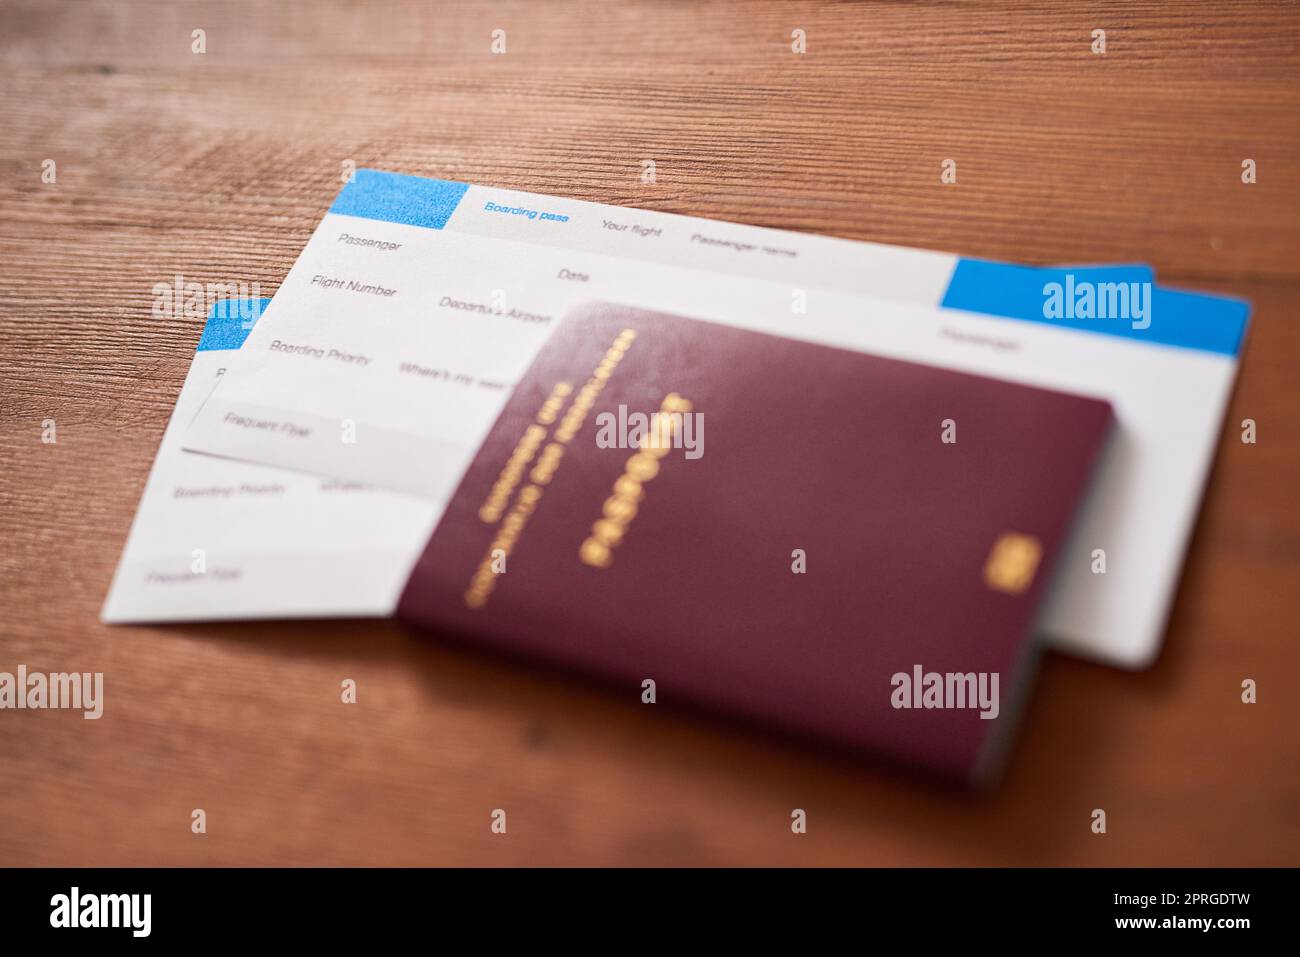 No llegaré lejos sin ellos: Dos billetes de avión y un pasaporte en una mesa. Foto de stock